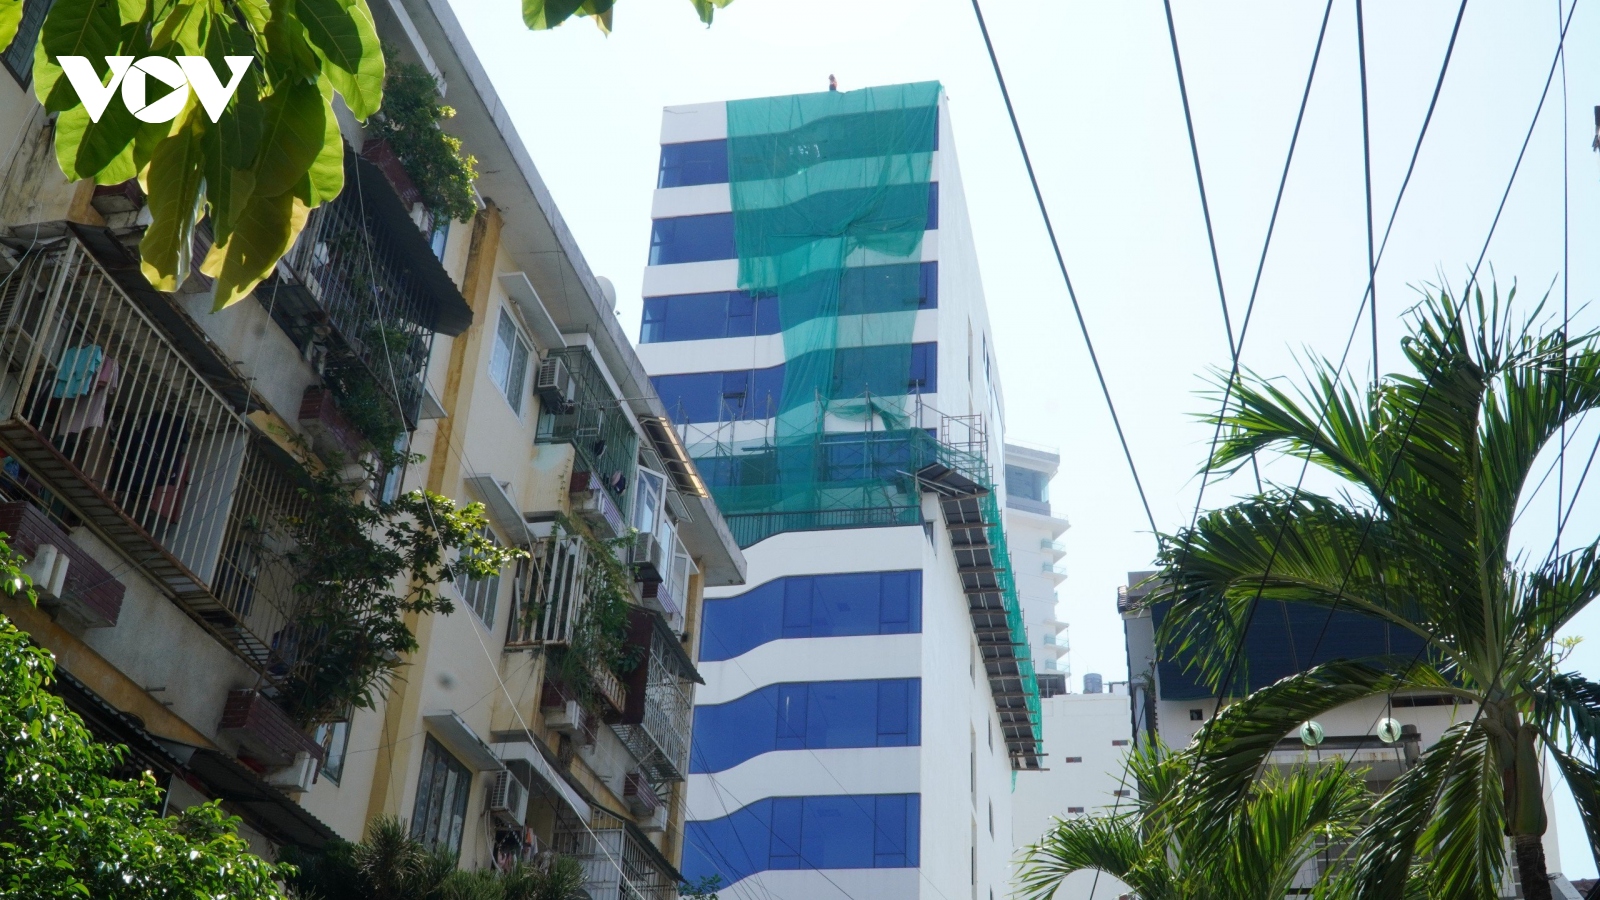 Cưỡng chế khách sạn xây dựng vượt 5 tầng ở Nha Trang